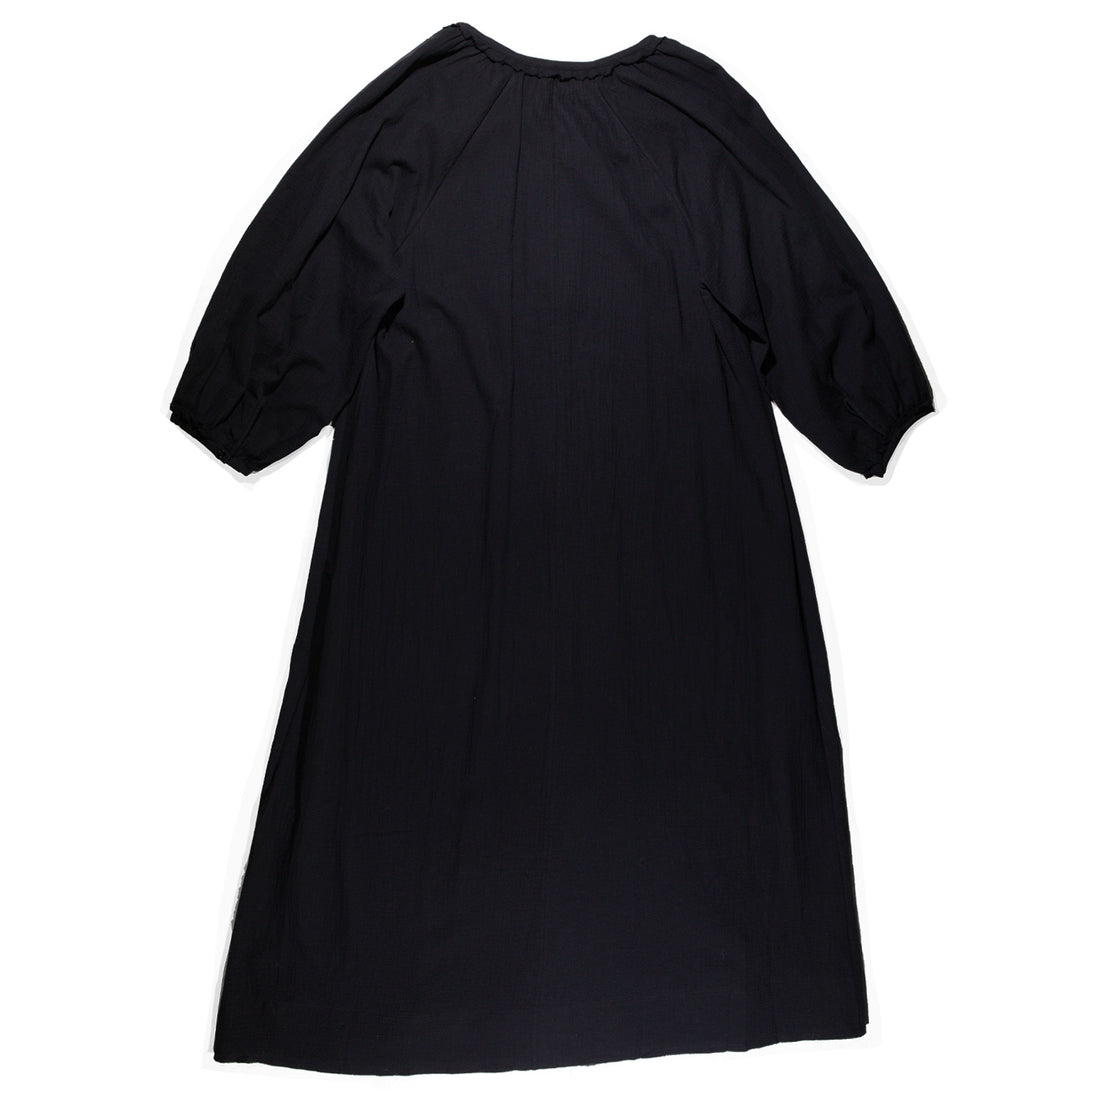 Rodebjer Eva Dress in Black